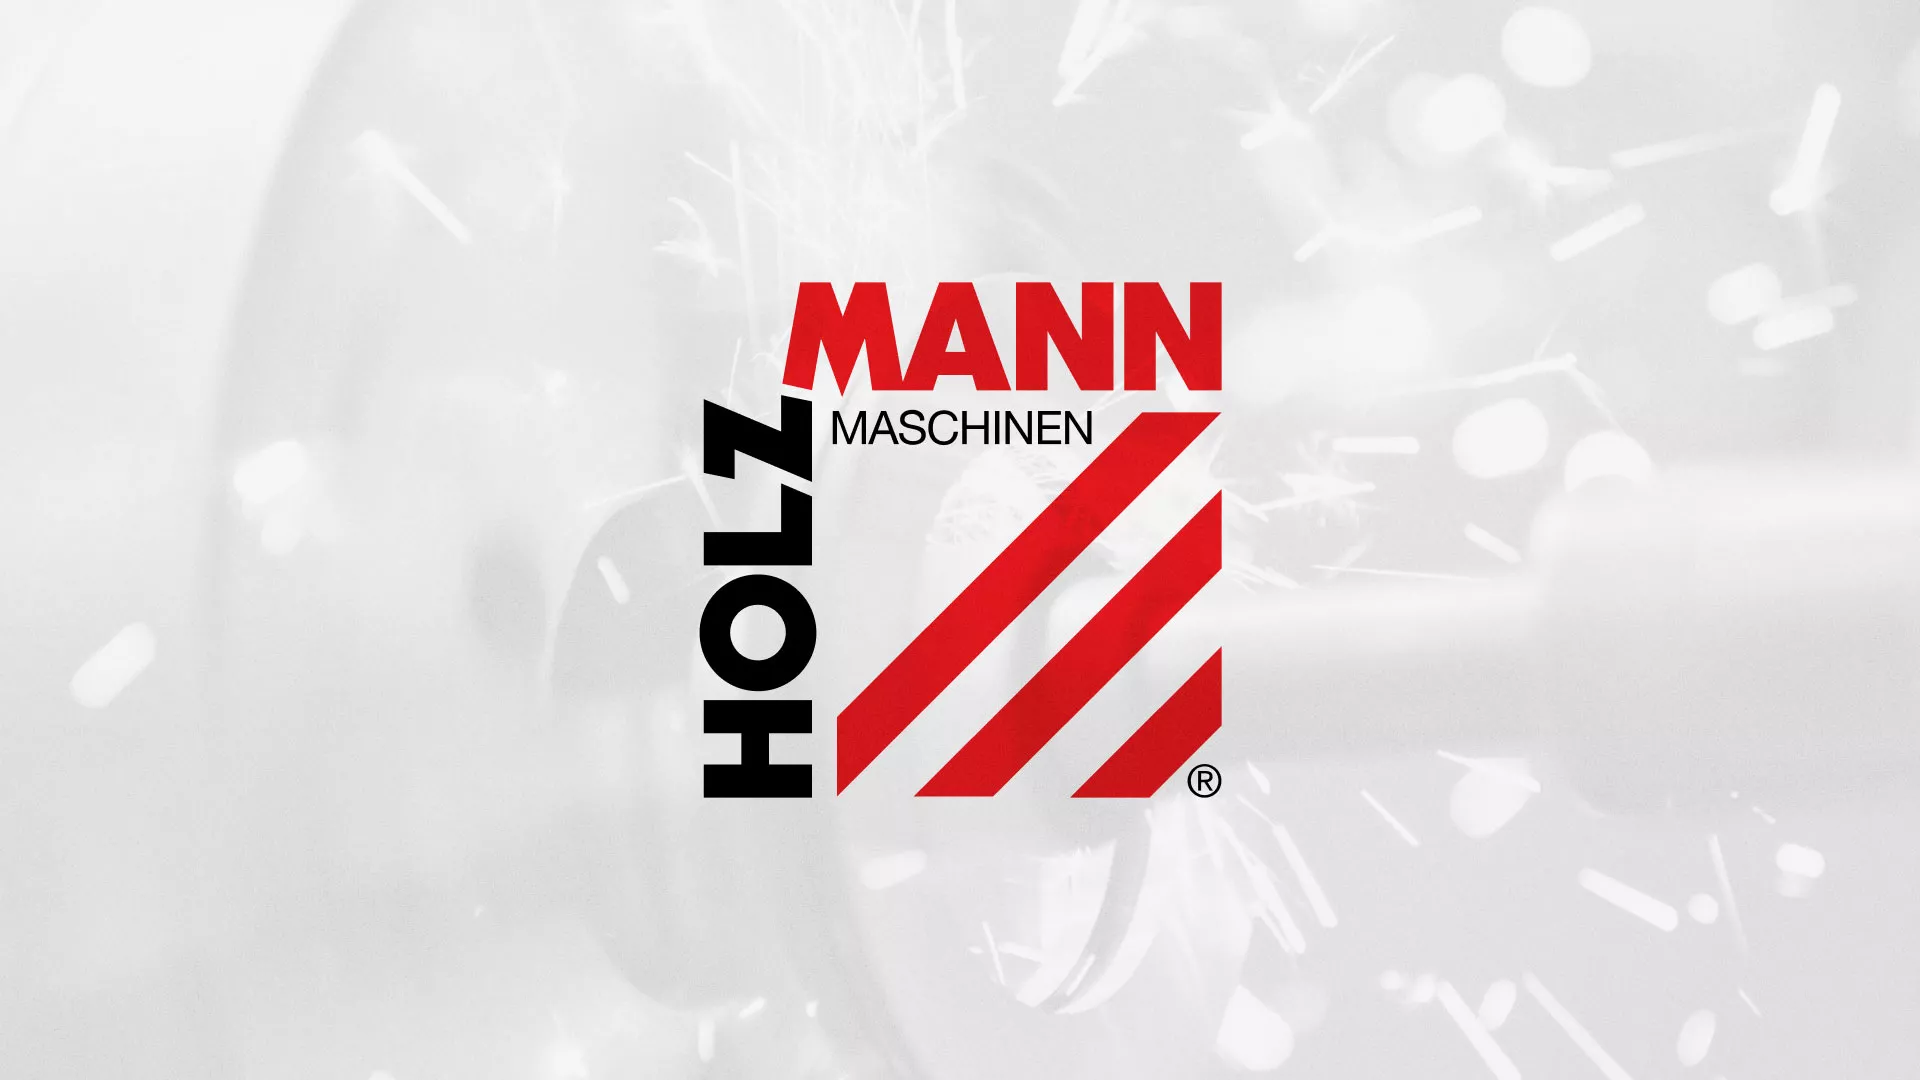 Создание сайта компании «HOLZMANN Maschinen GmbH» в Санкт-Петербурге